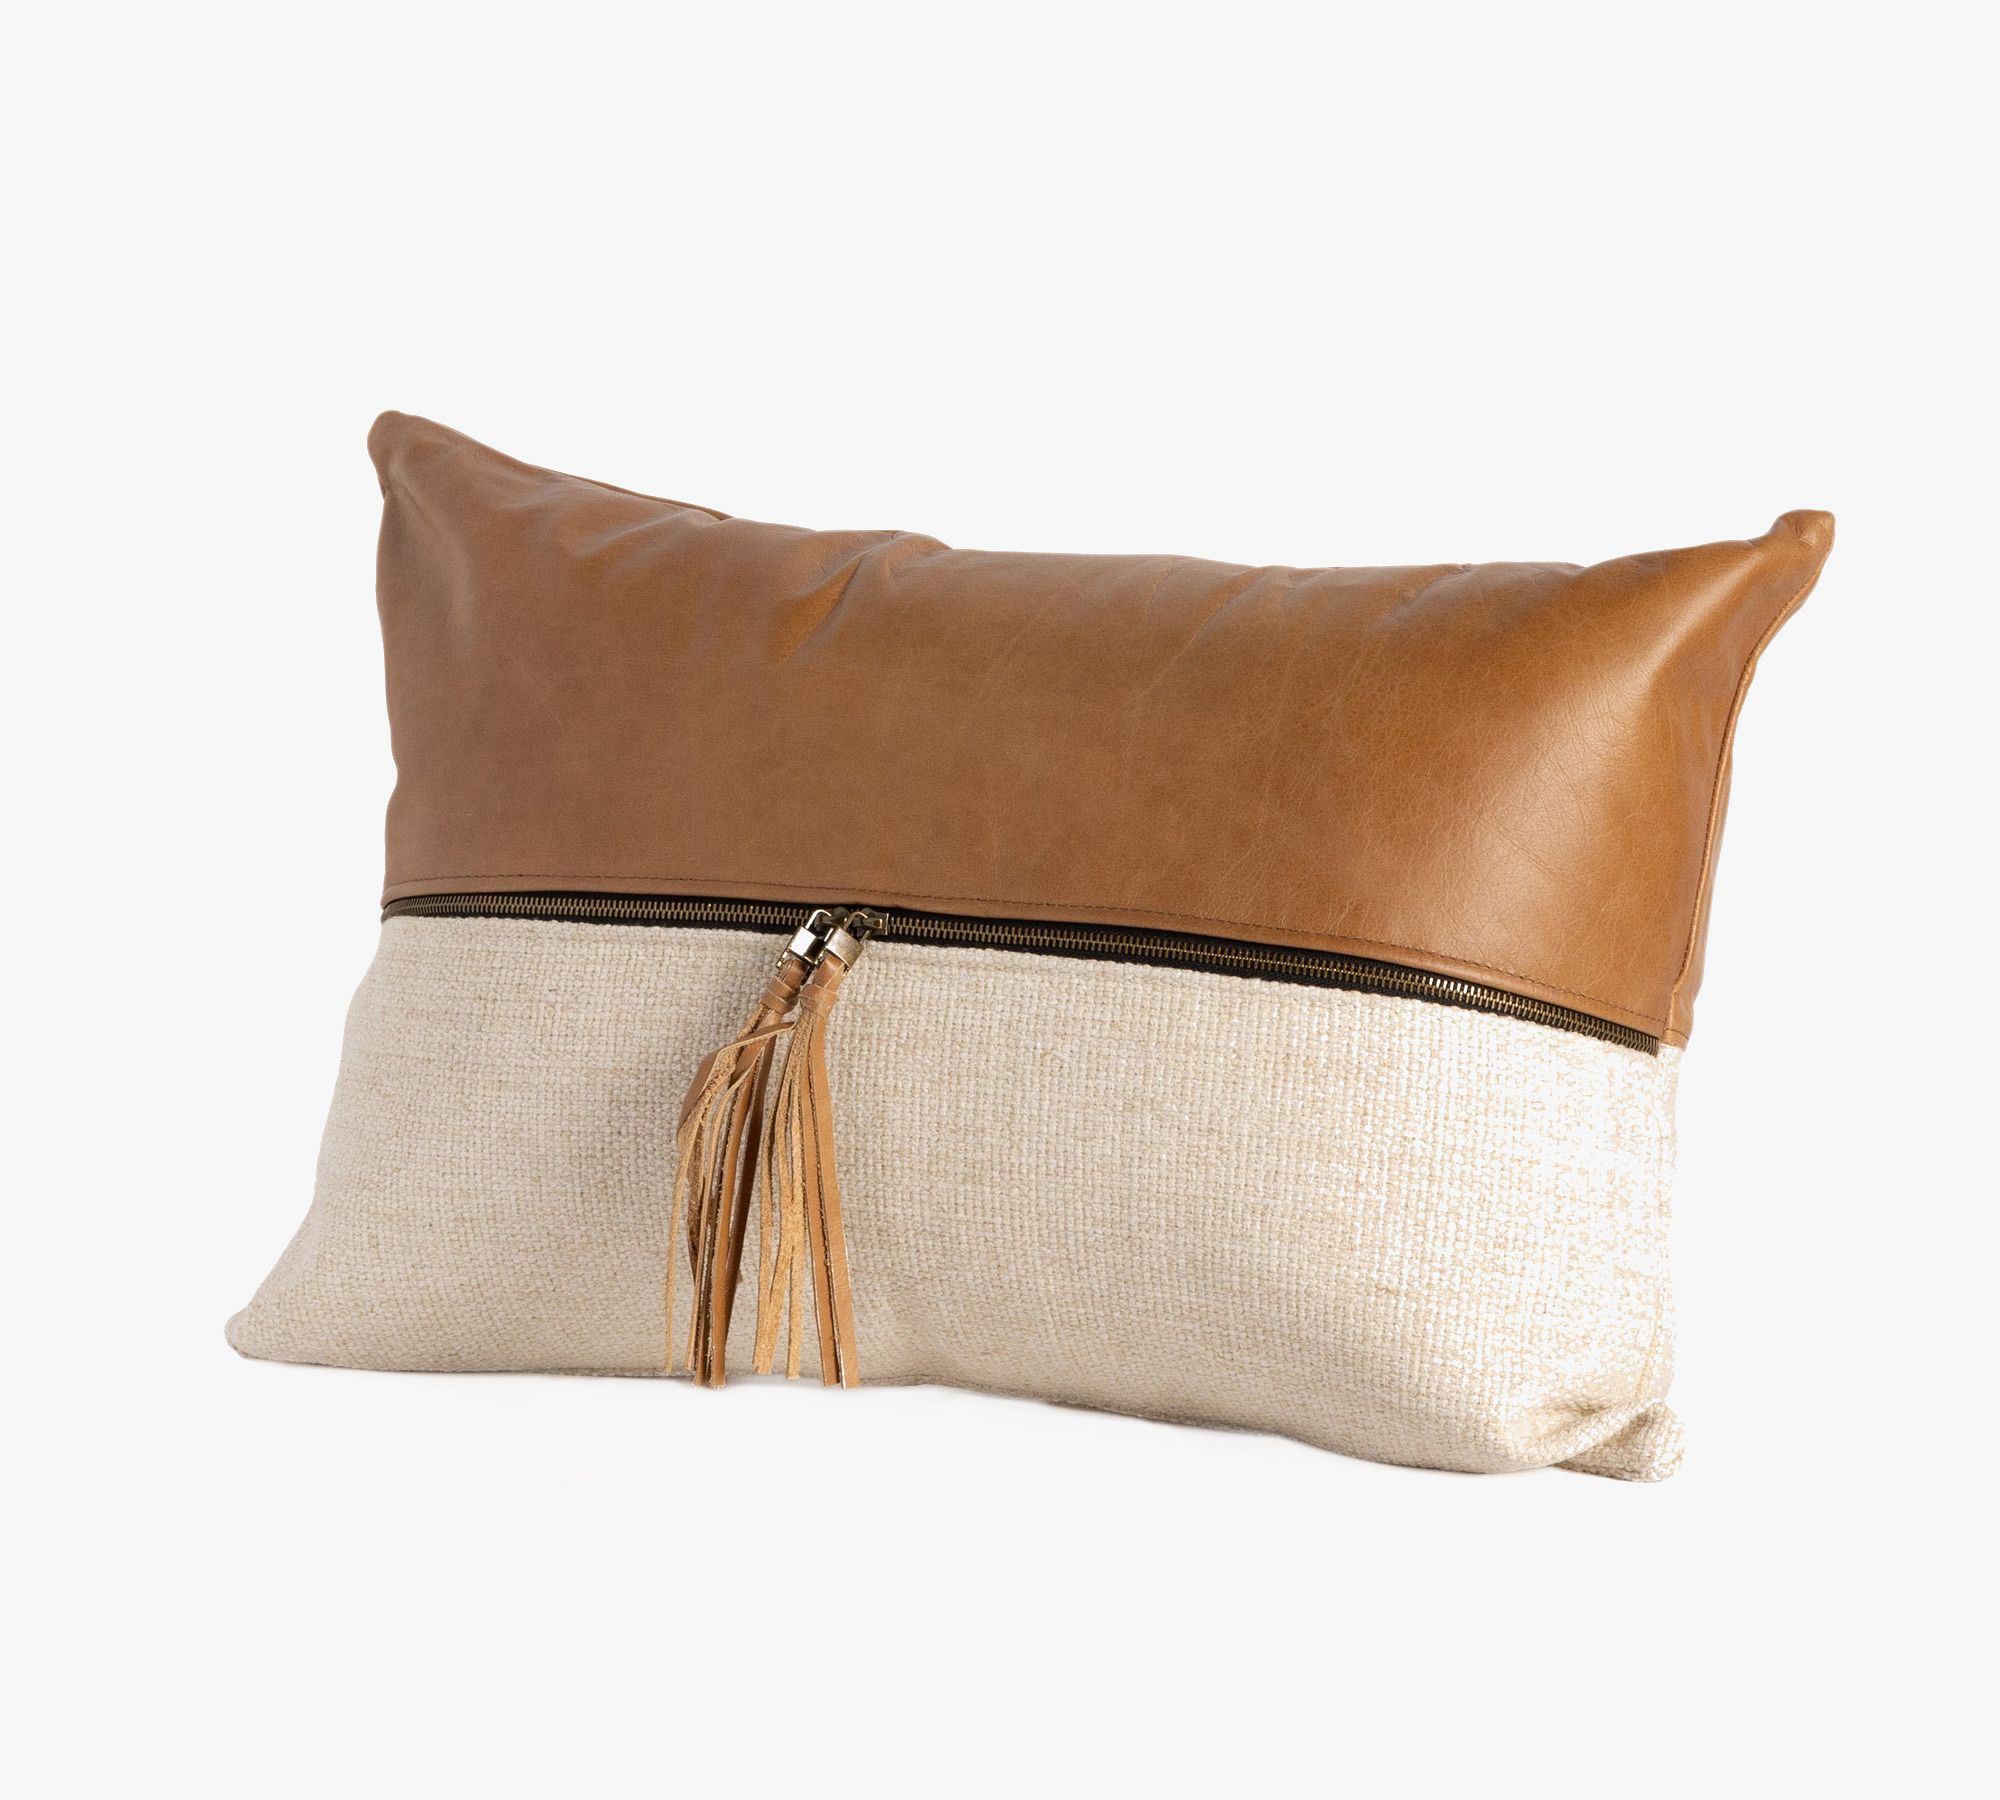 Layna Leather and Linen Block Lumbar Pillow